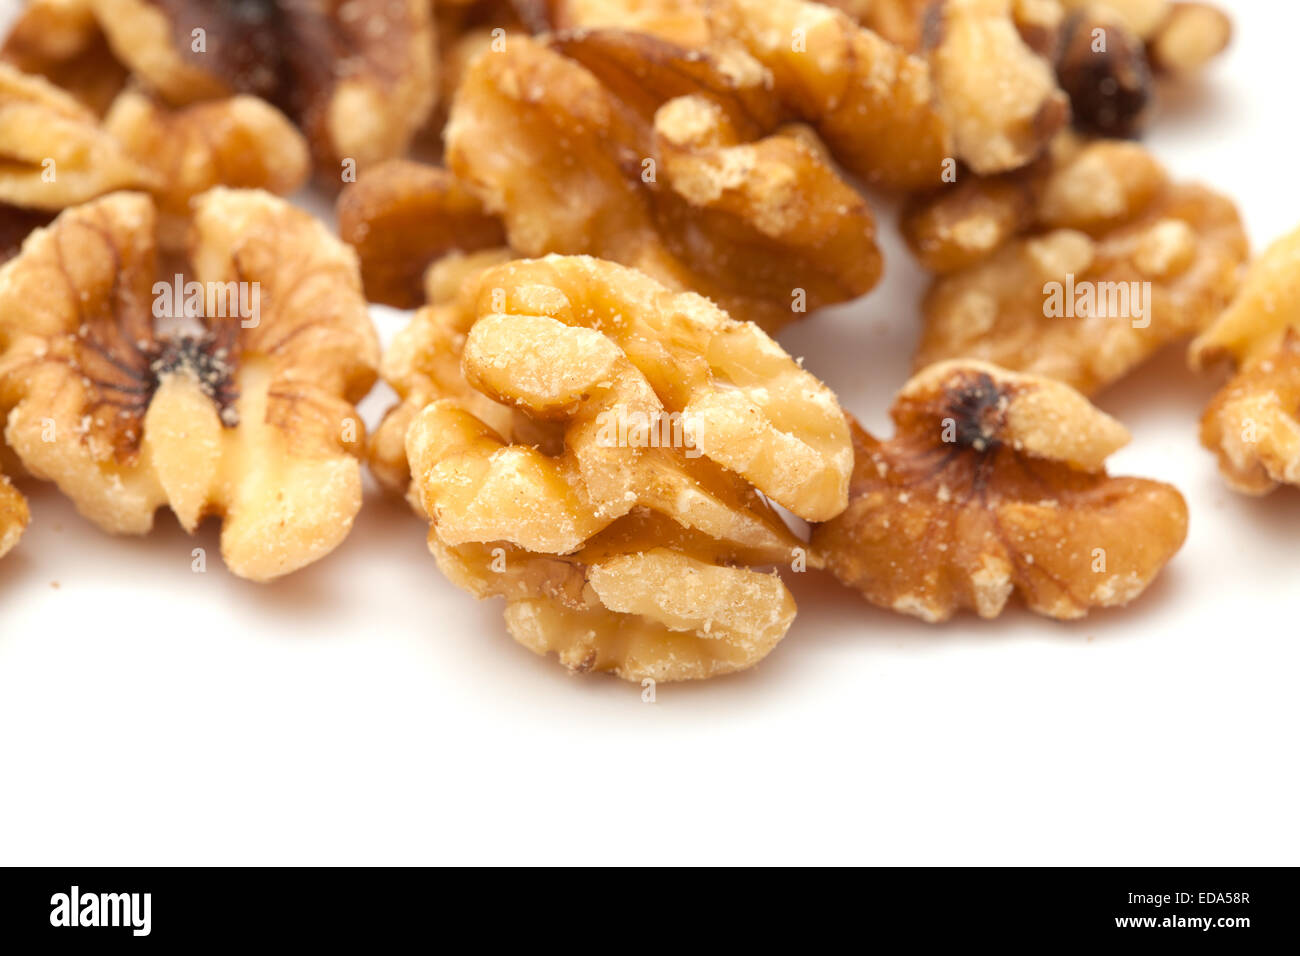 shelled walnuts isolated on white background Stock Photo